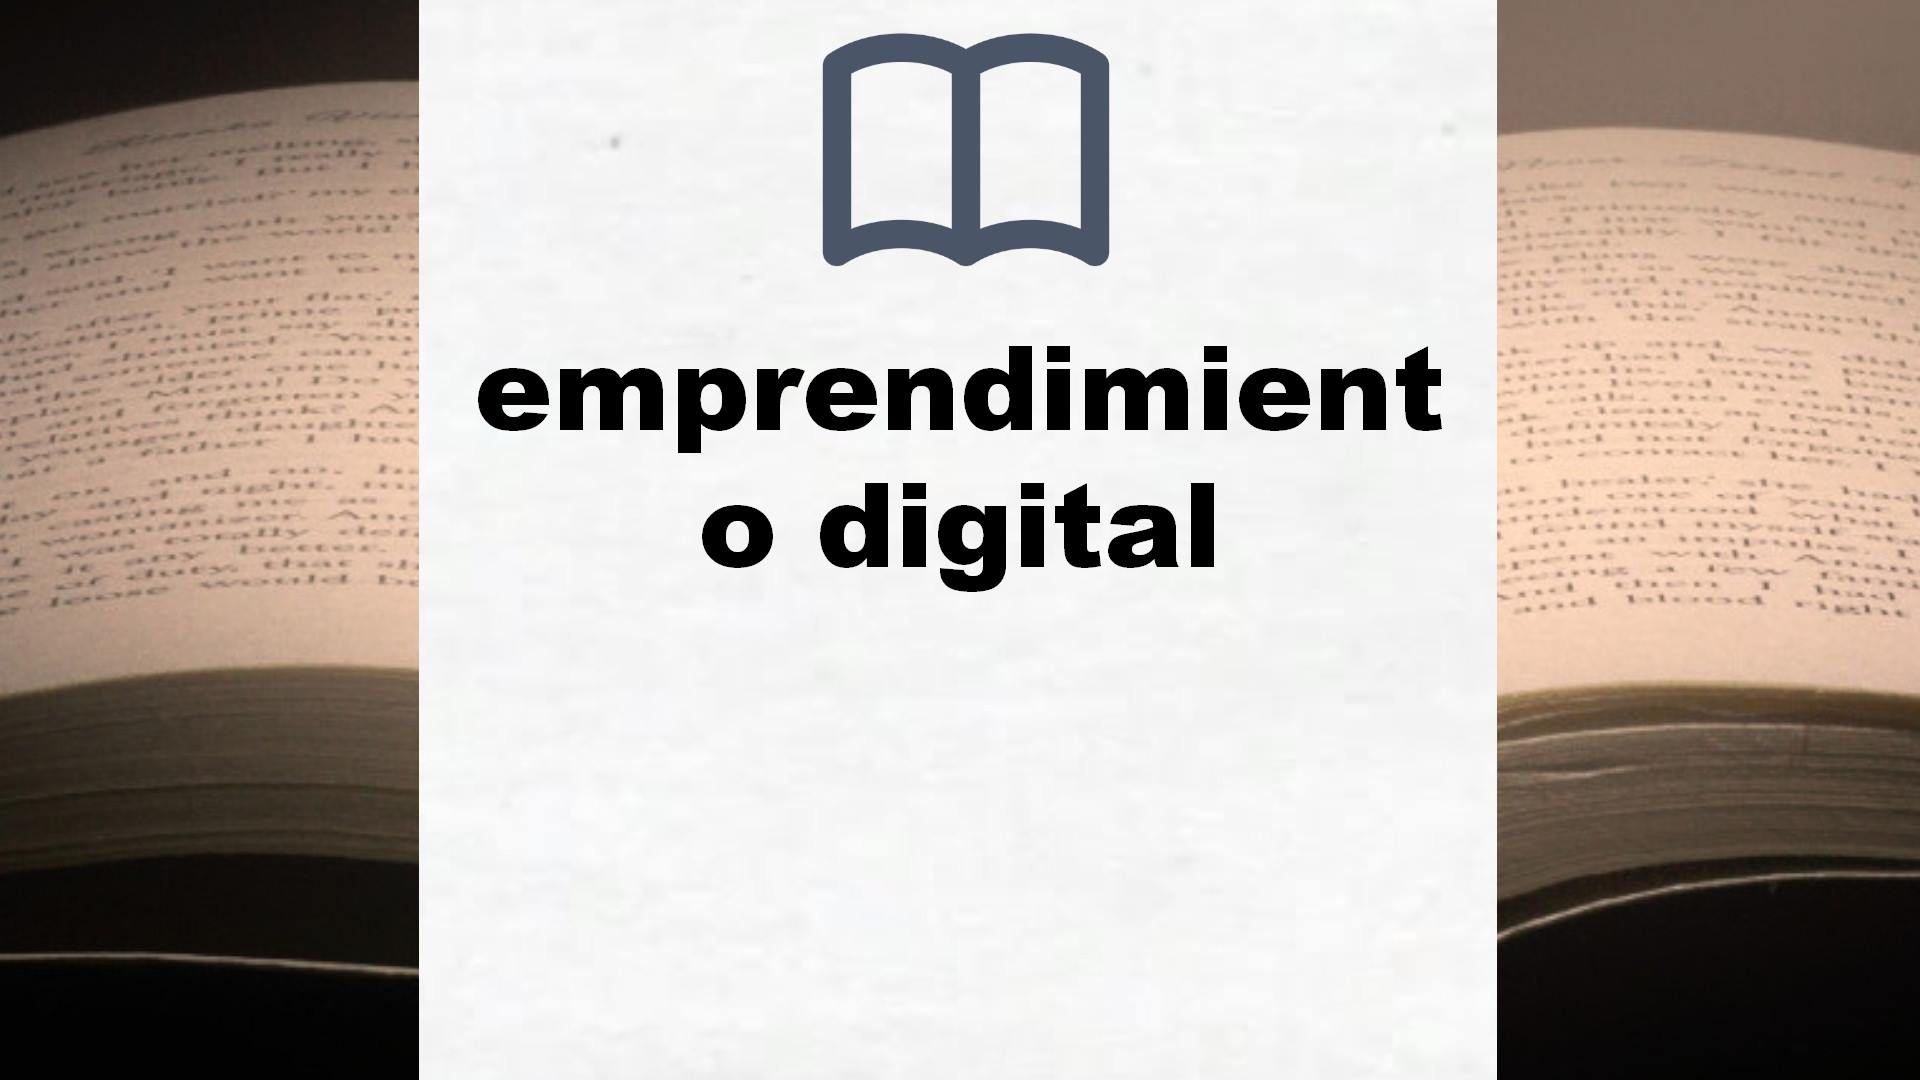 Libros sobre emprendimiento digital